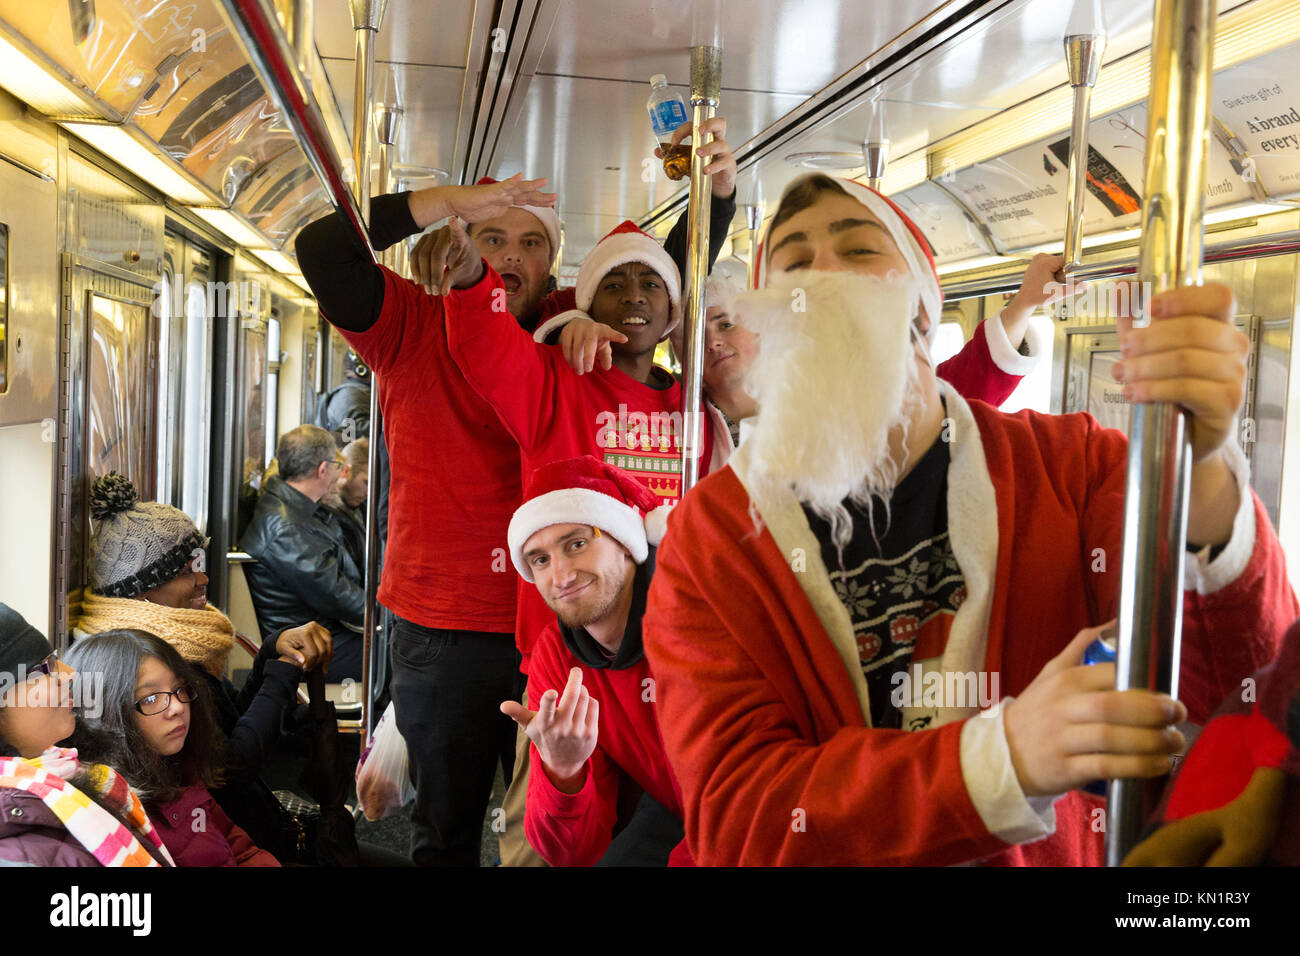 New York, NY - 9 décembre 2017 : Les participants de SantaCon 2017 équitation métro de New York Crédit : lev radin/Alamy Live News Banque D'Images